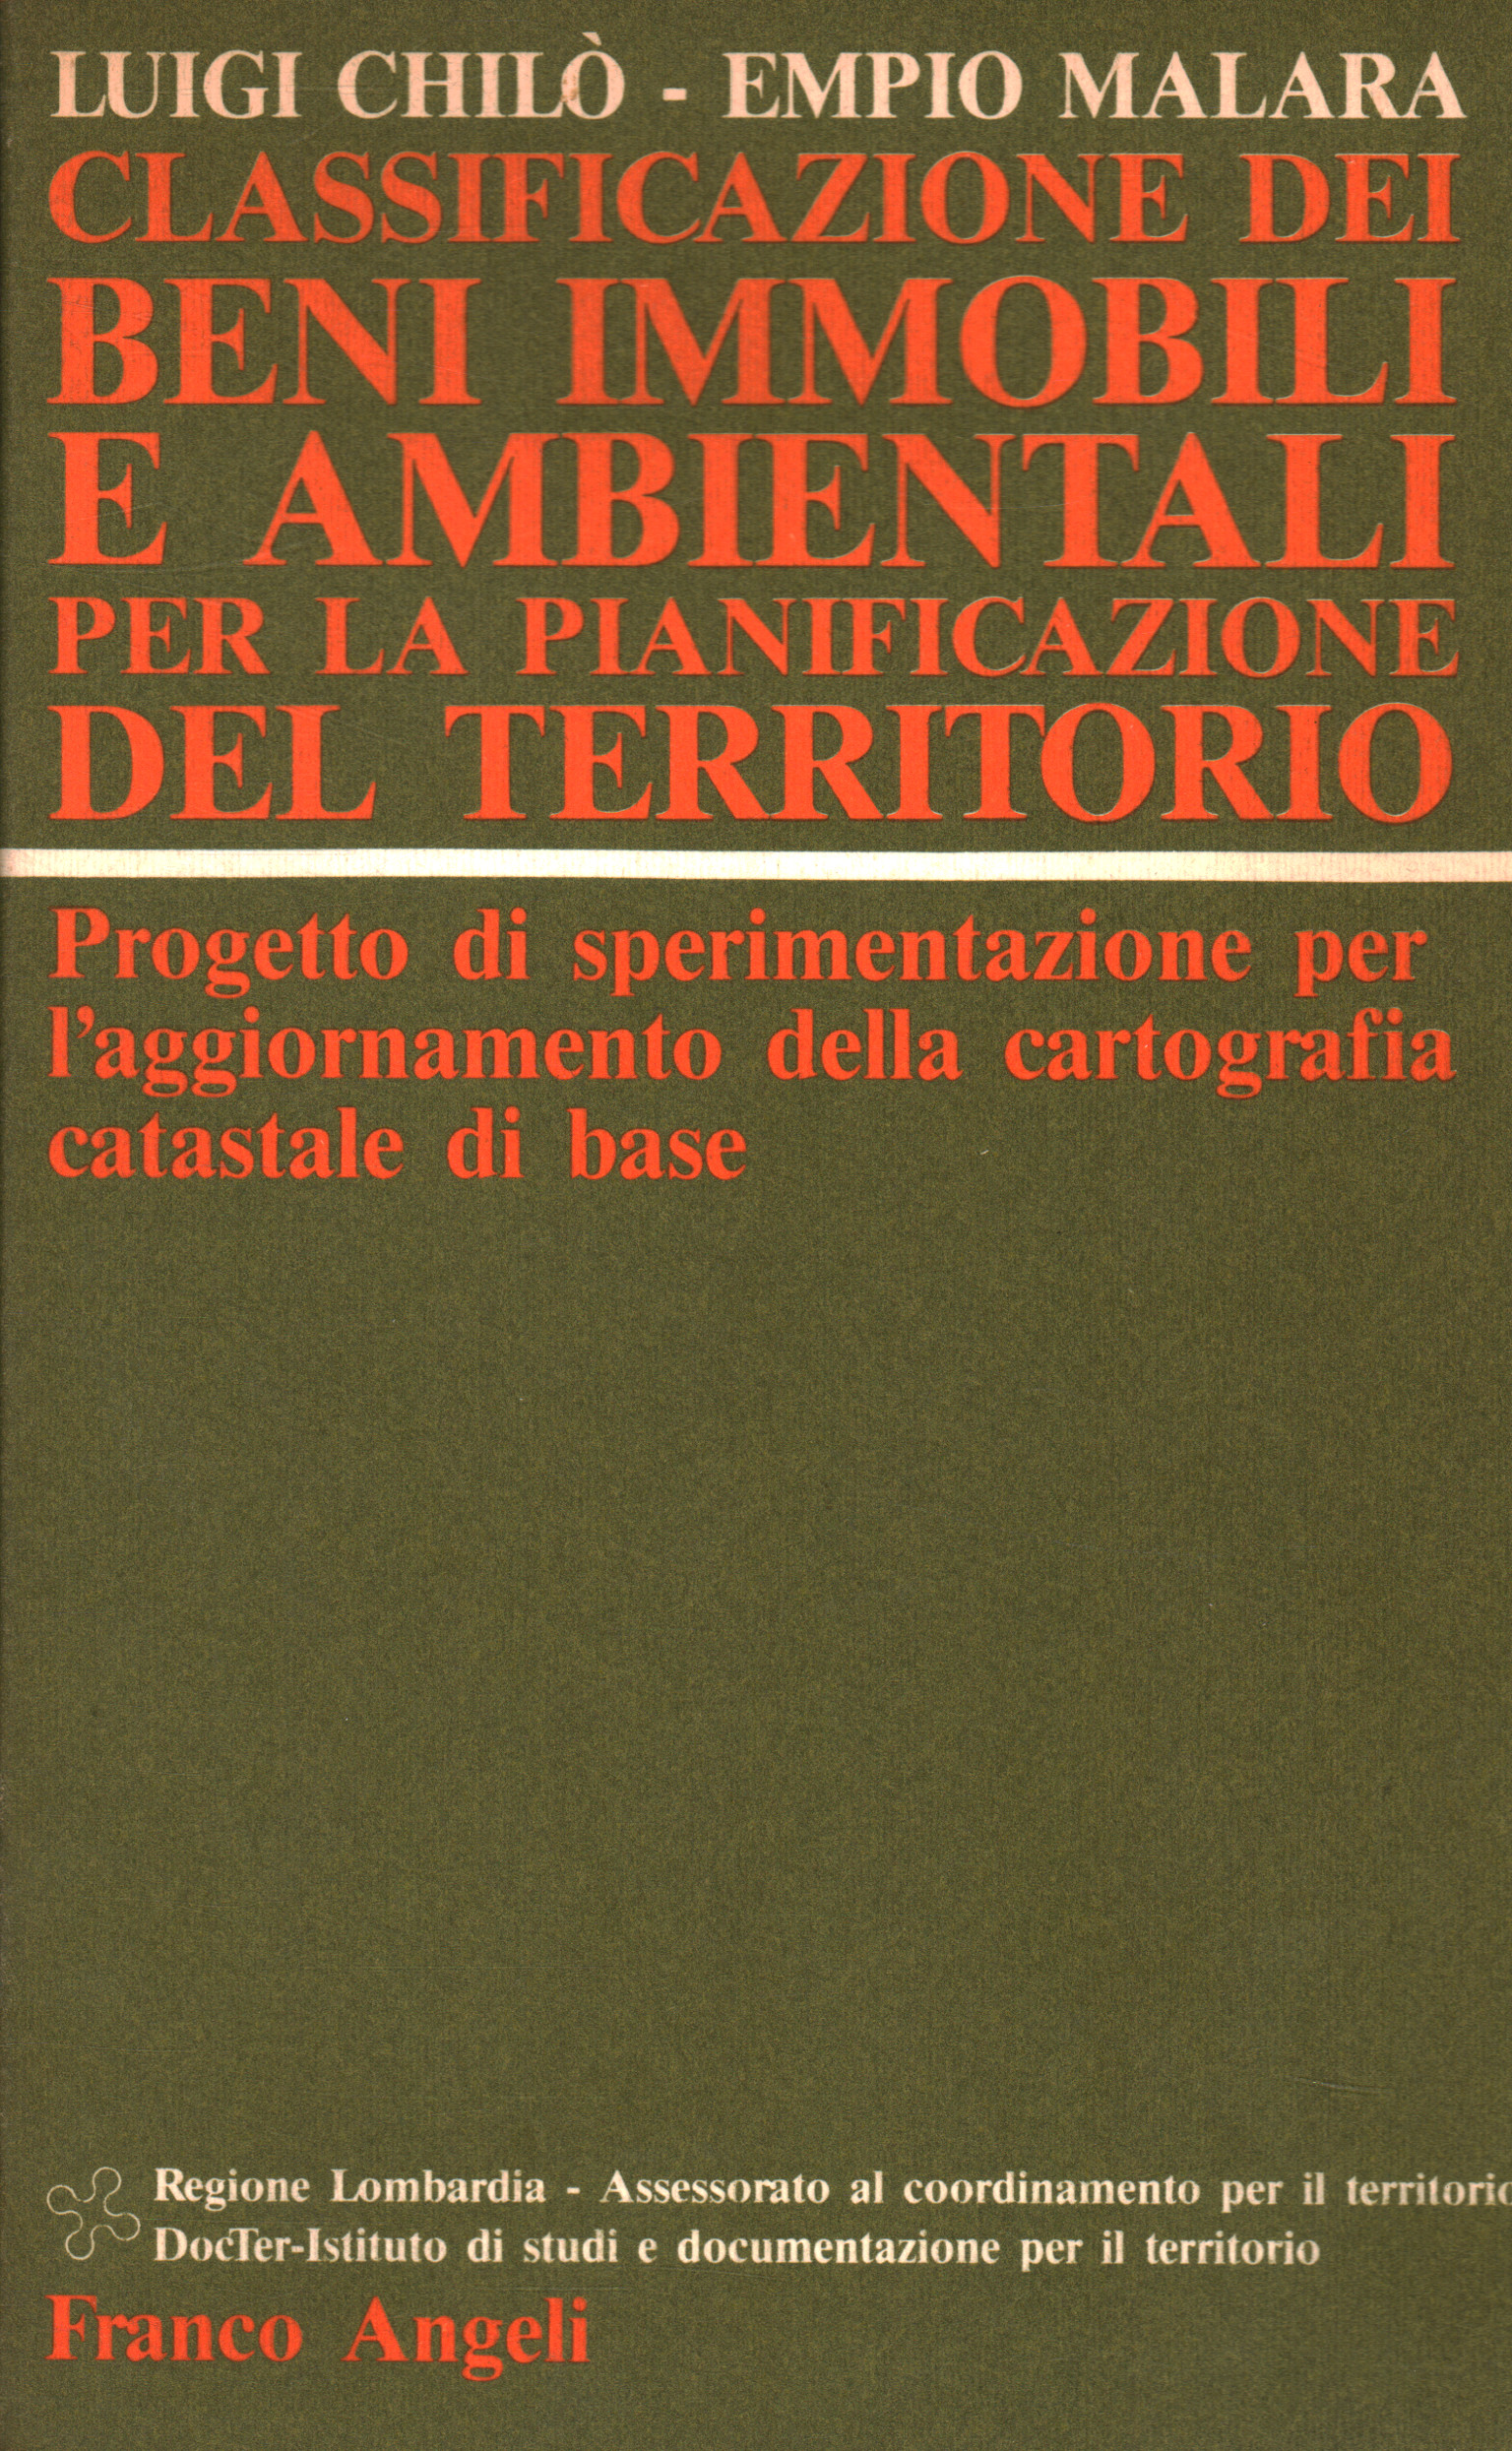 Clasificación de activos inmobiliarios y medioambientales para Luigi Chiò Empio Malara